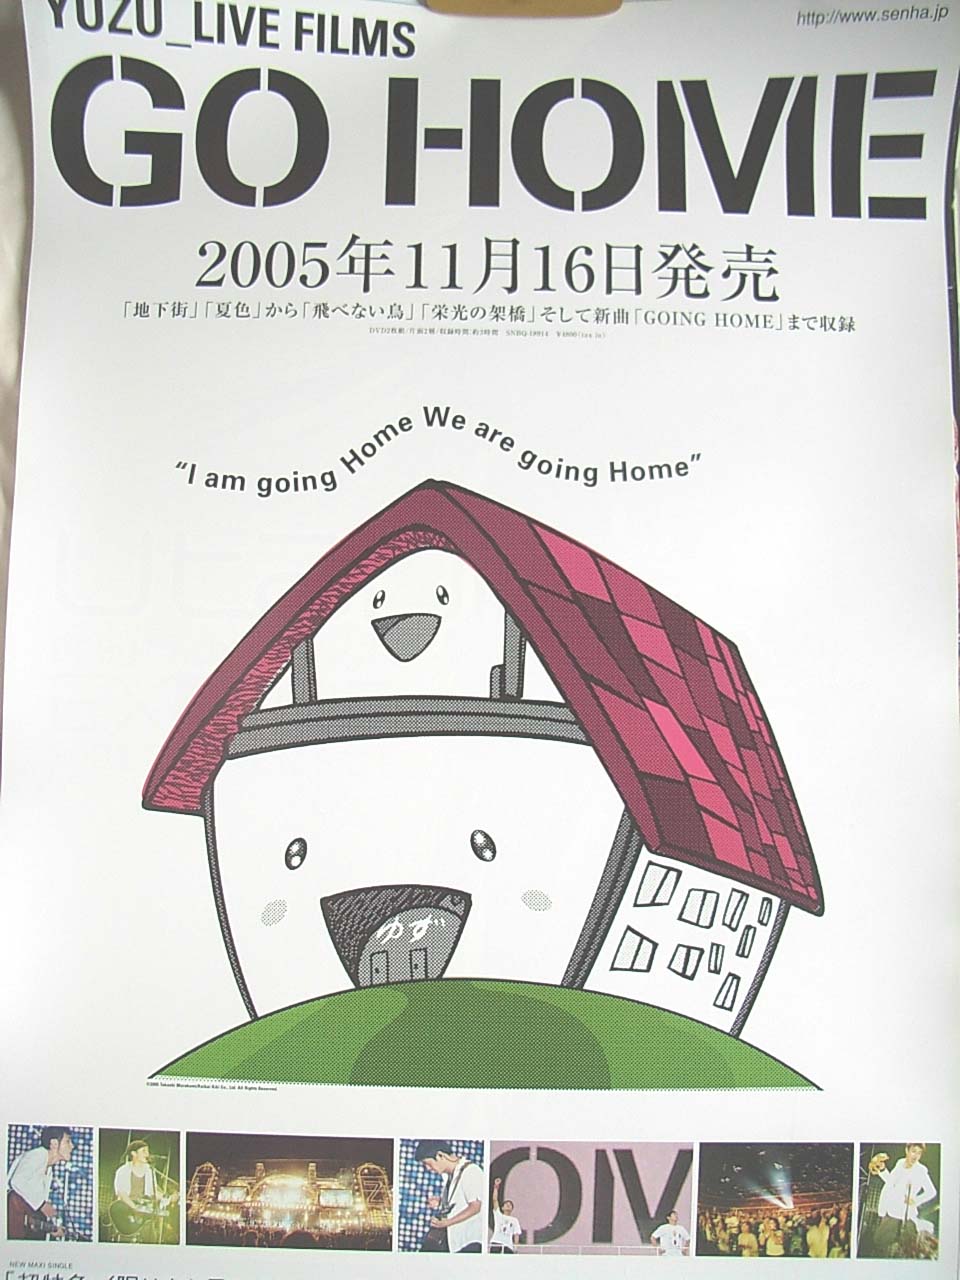 ゆず 「Live Films GO HOME」のポスター